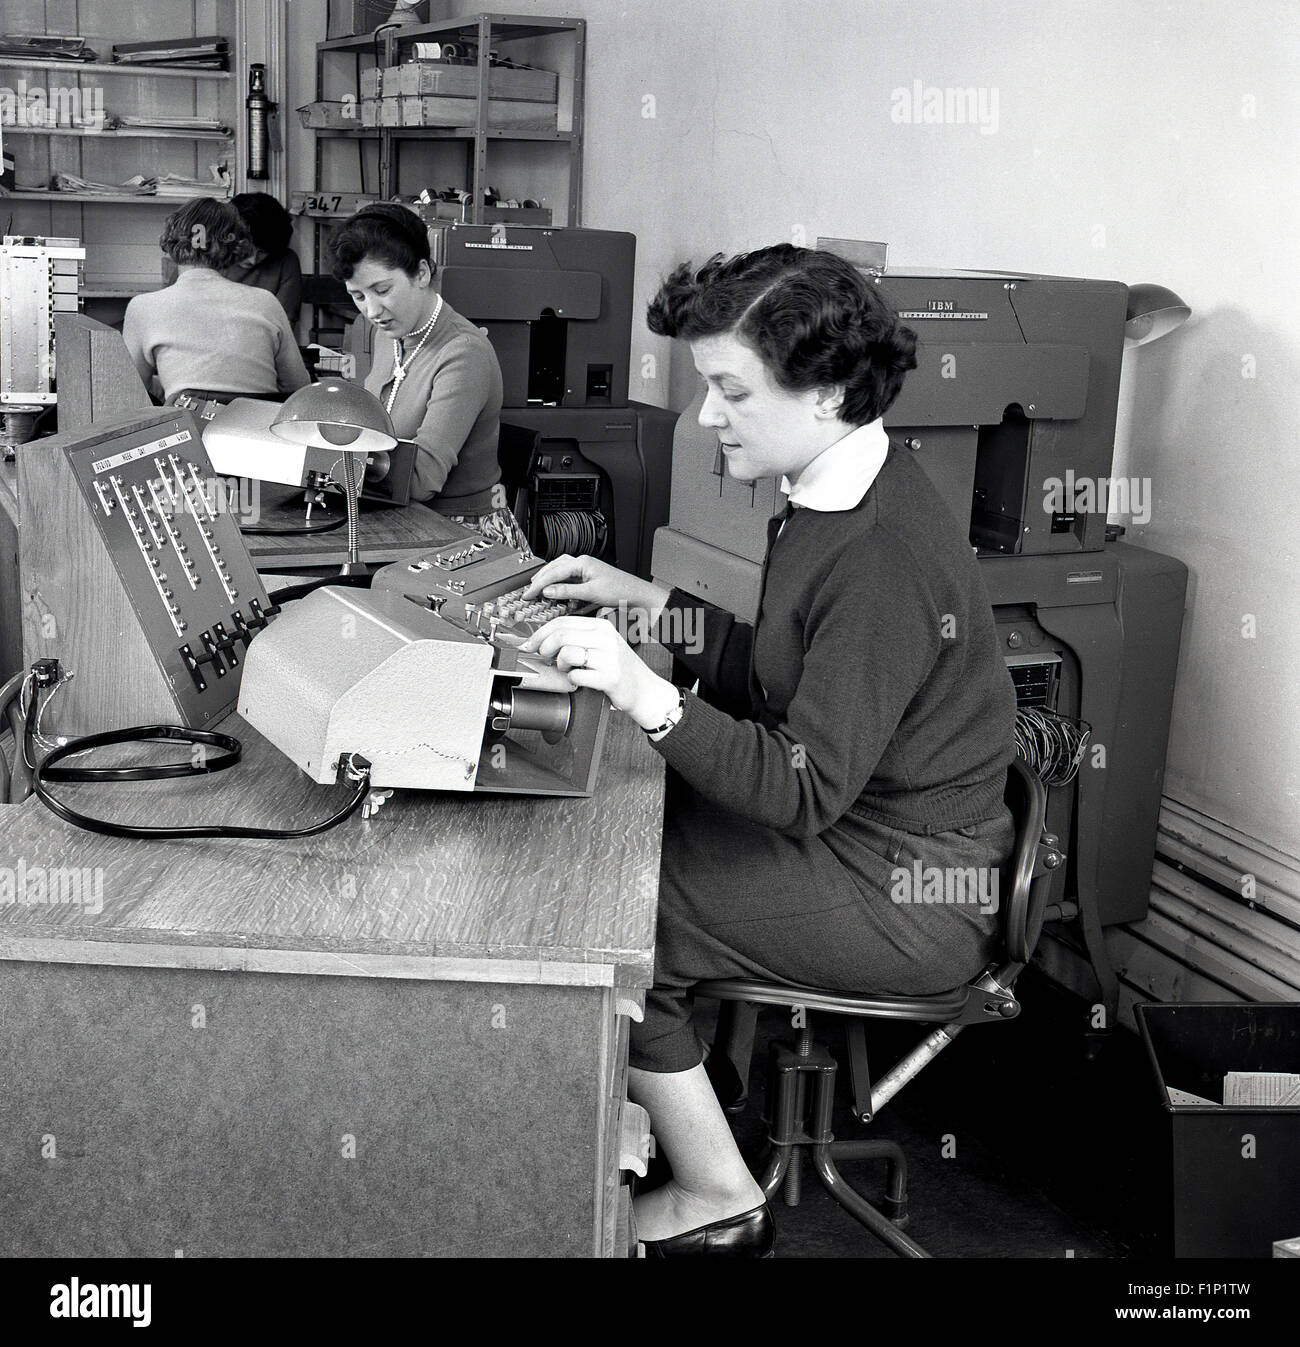 Storico degli anni cinquanta, un'immagine raffigurante un ufficio con segretarie o conti assistenti o gli addetti al lavoro utilizzando varie macchine. Foto Stock